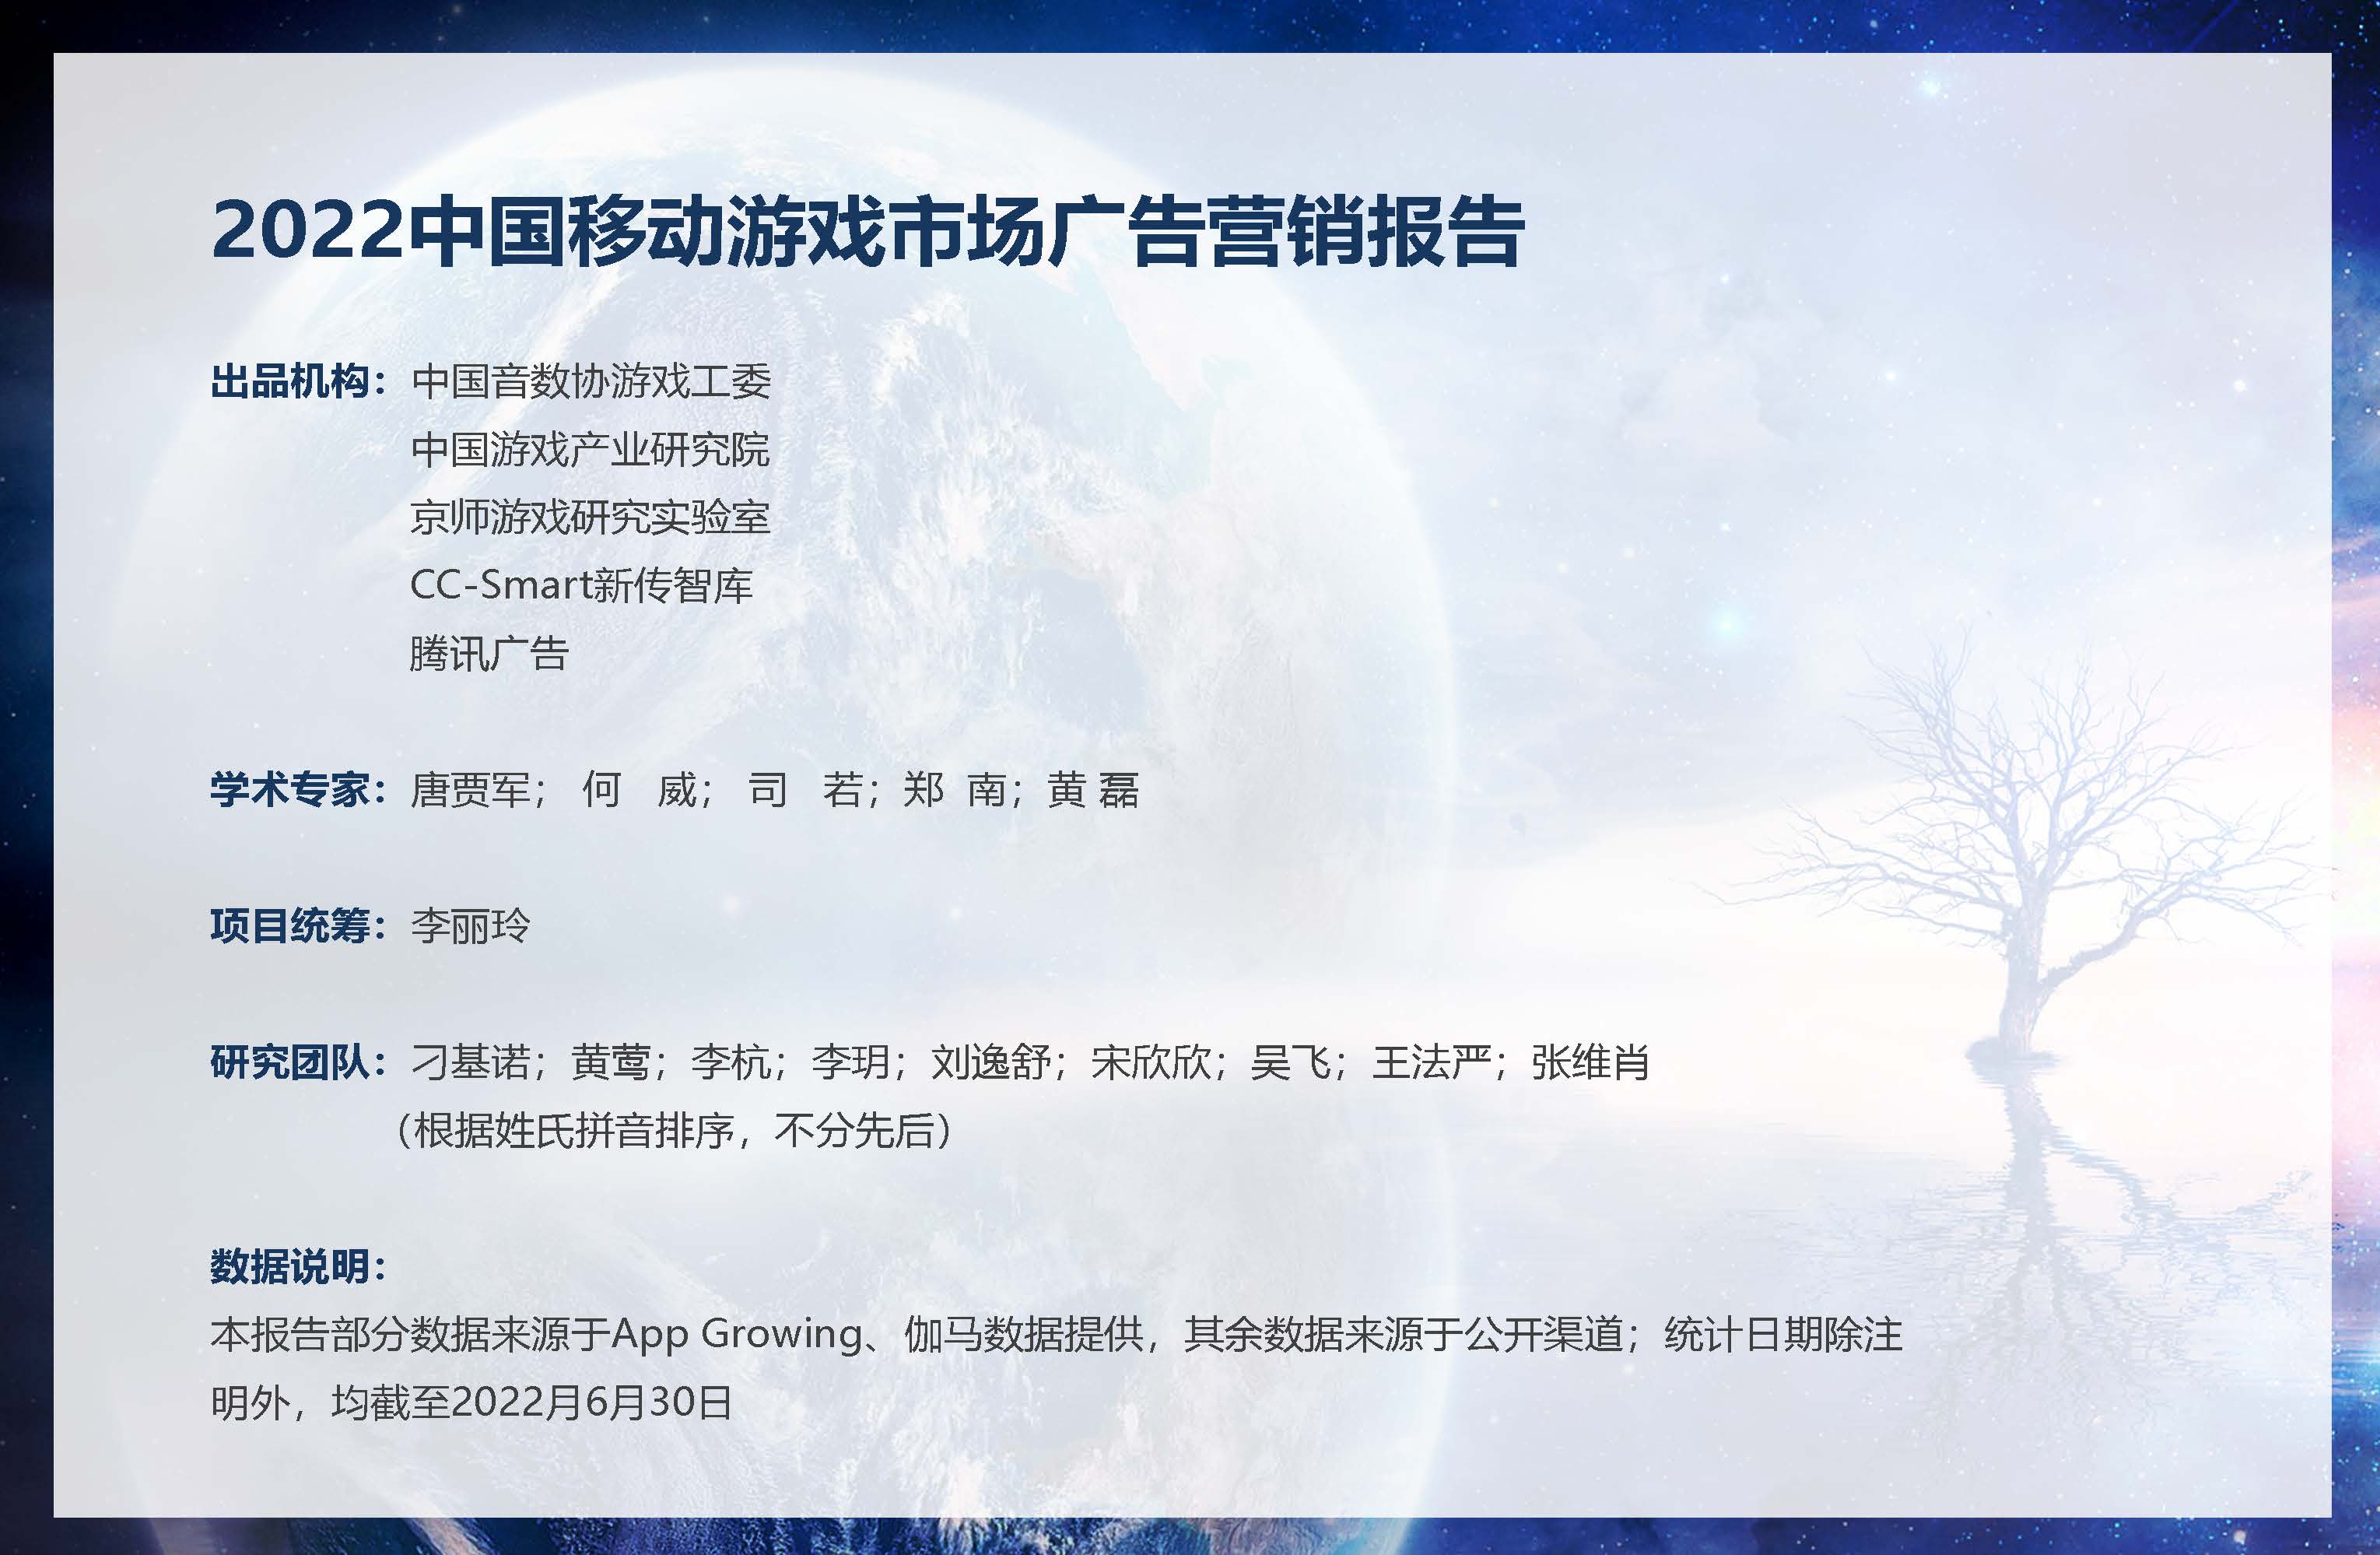 2022中国移动游戏市场广告营销报告